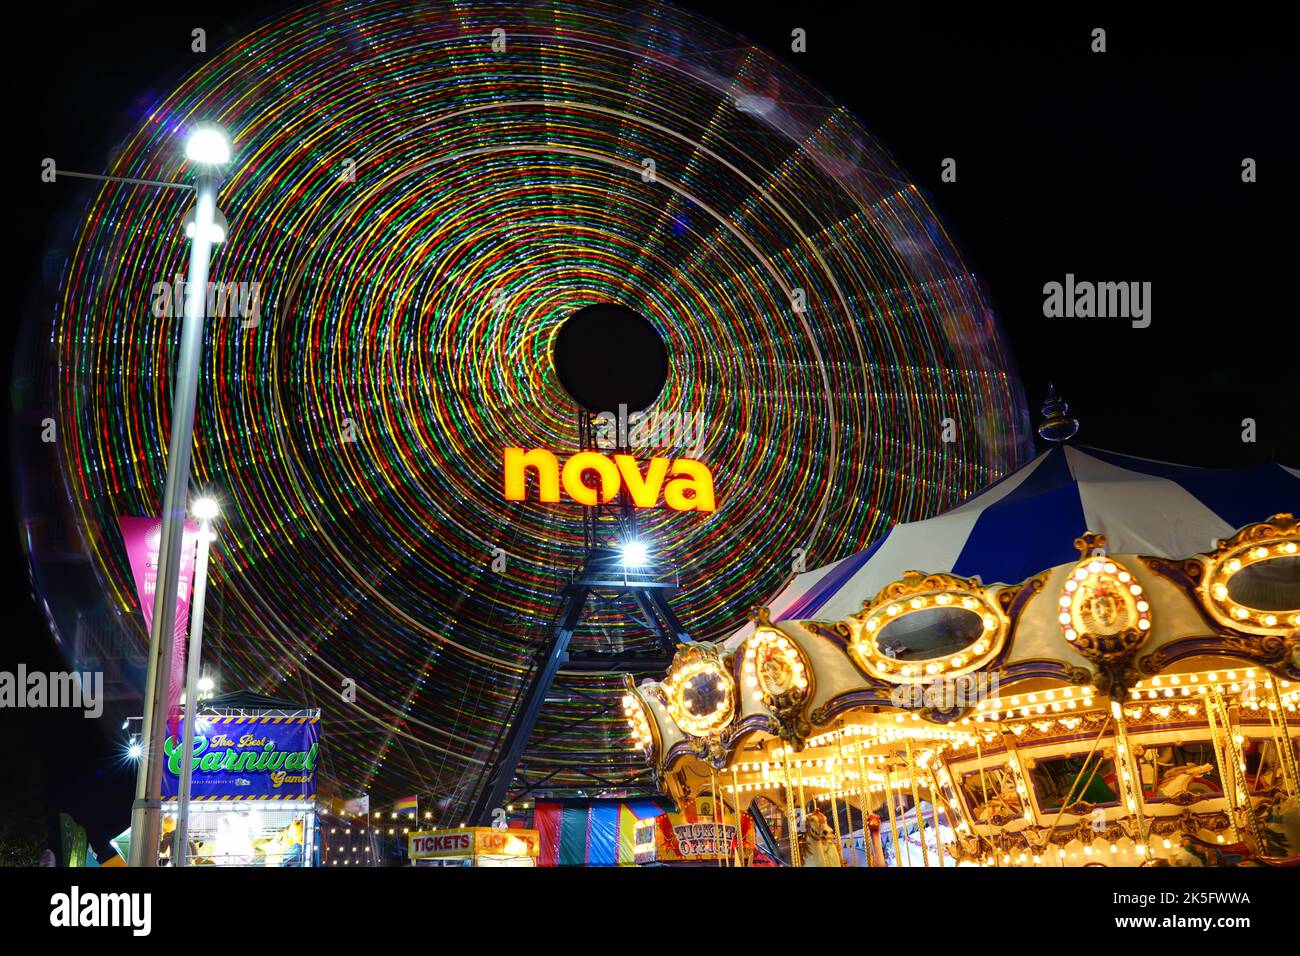 Ferris wheel in Adelaide showground, South Australia Stock Photo